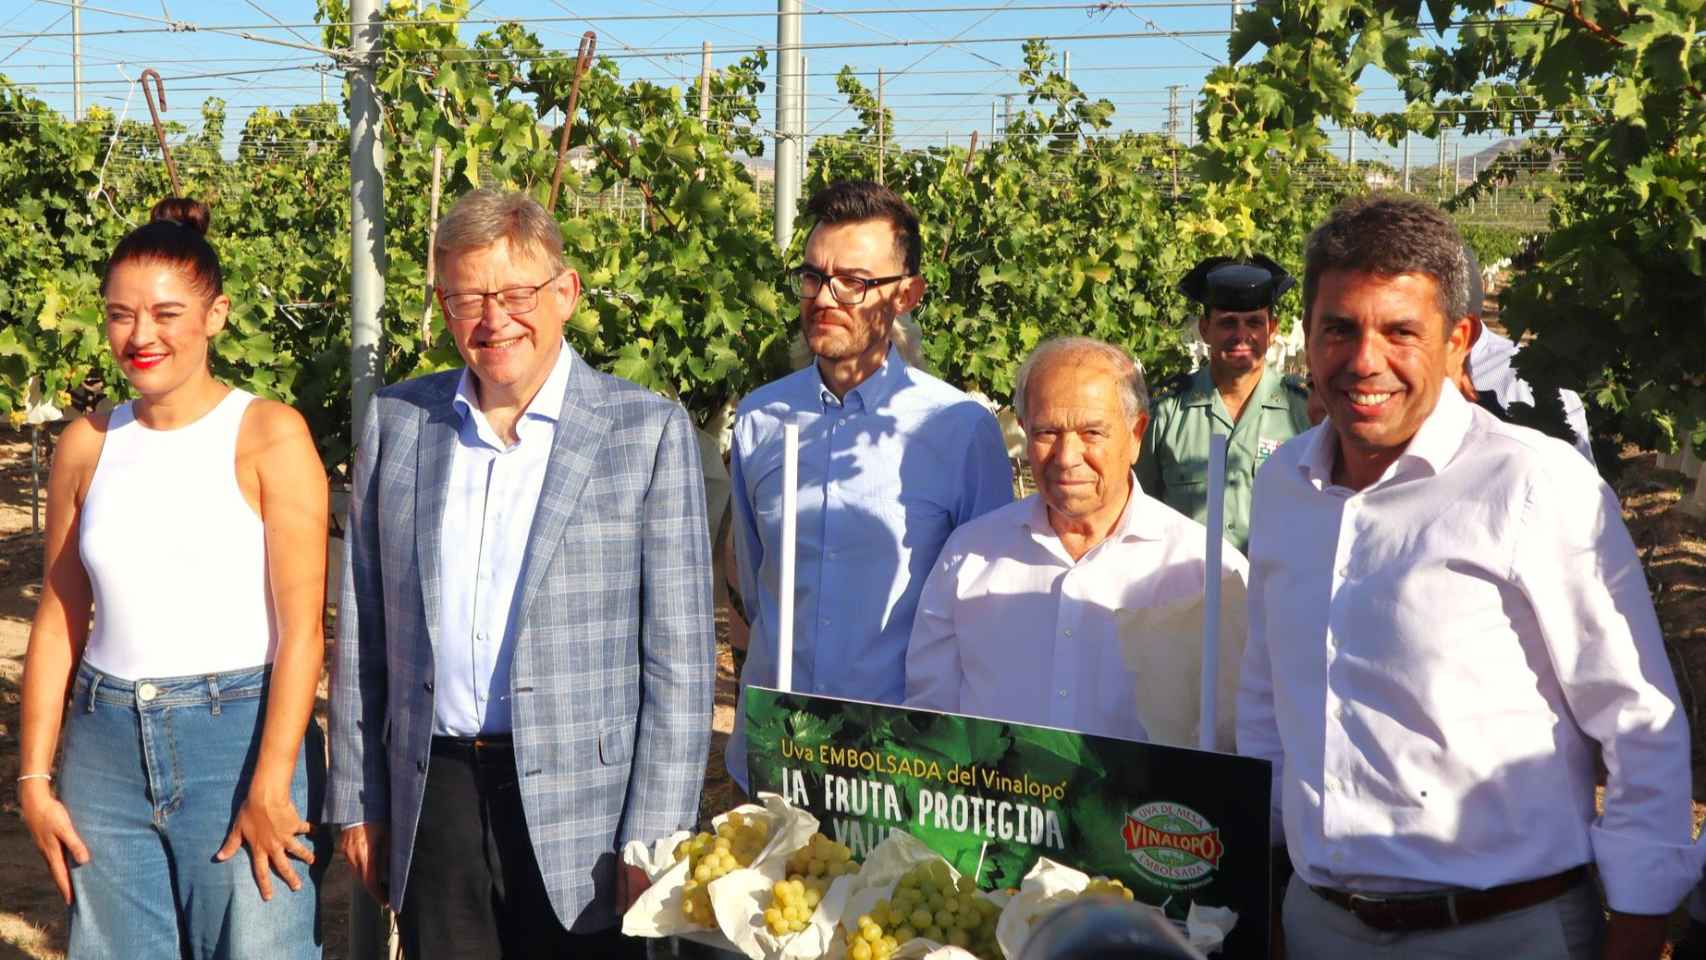 Ximo Puig y Carlos Mazón en el acto esta semana en Novelda de la campaña de la uva embolsada de Novelda.